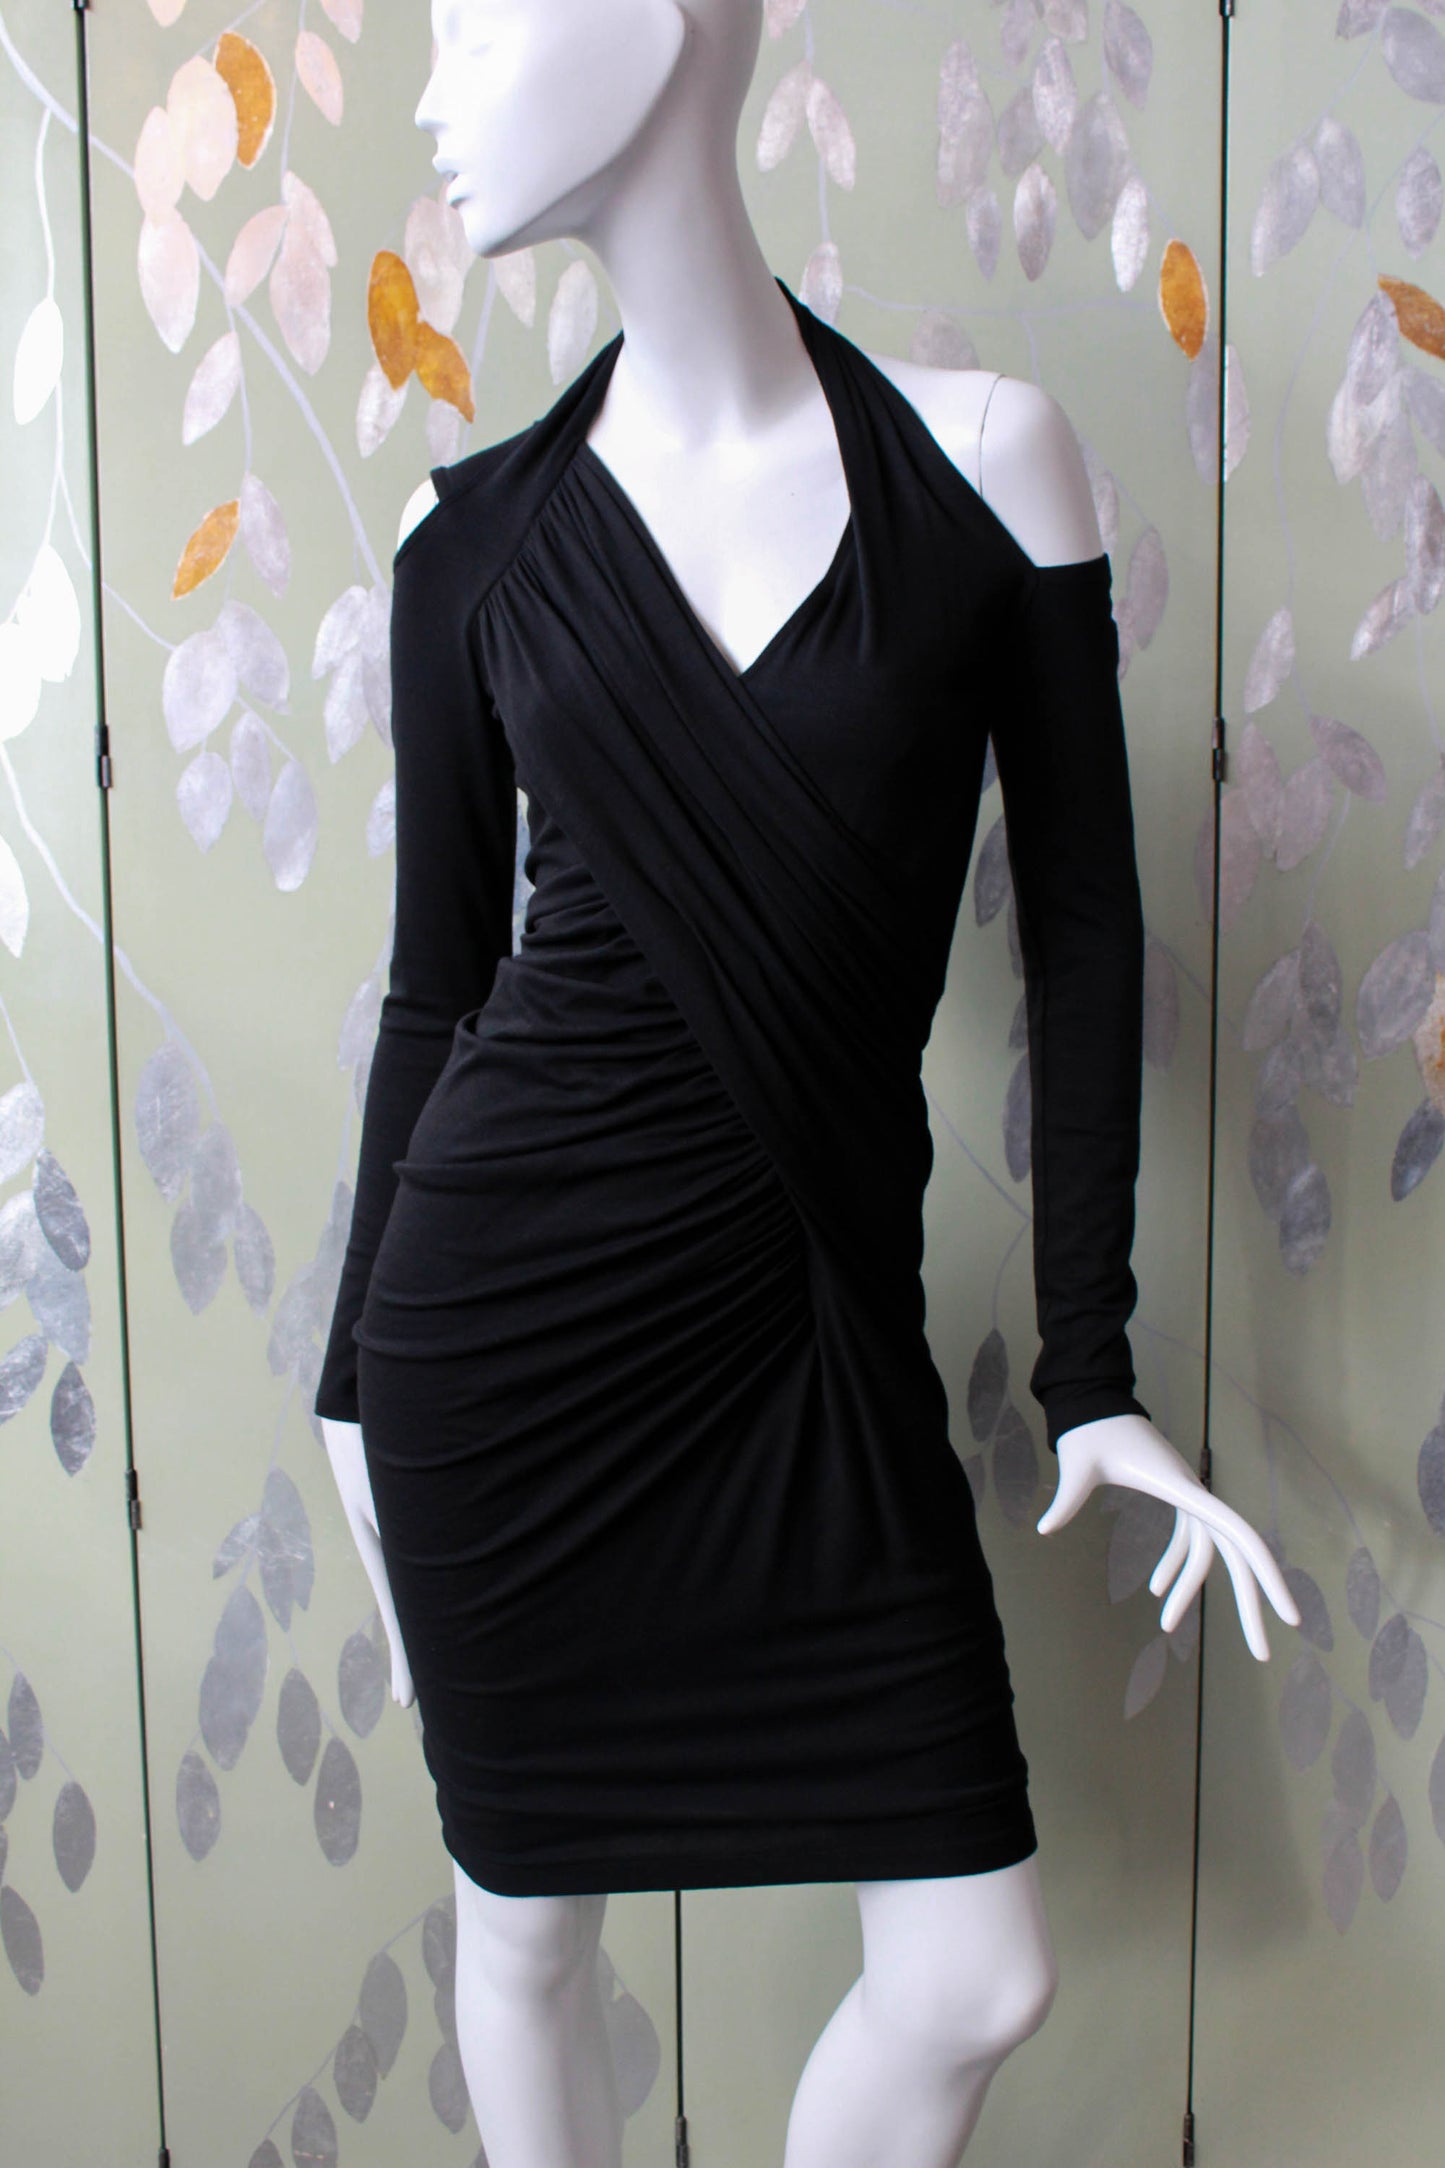 Donna Karan Black Label Black Knit Dress, XS/S